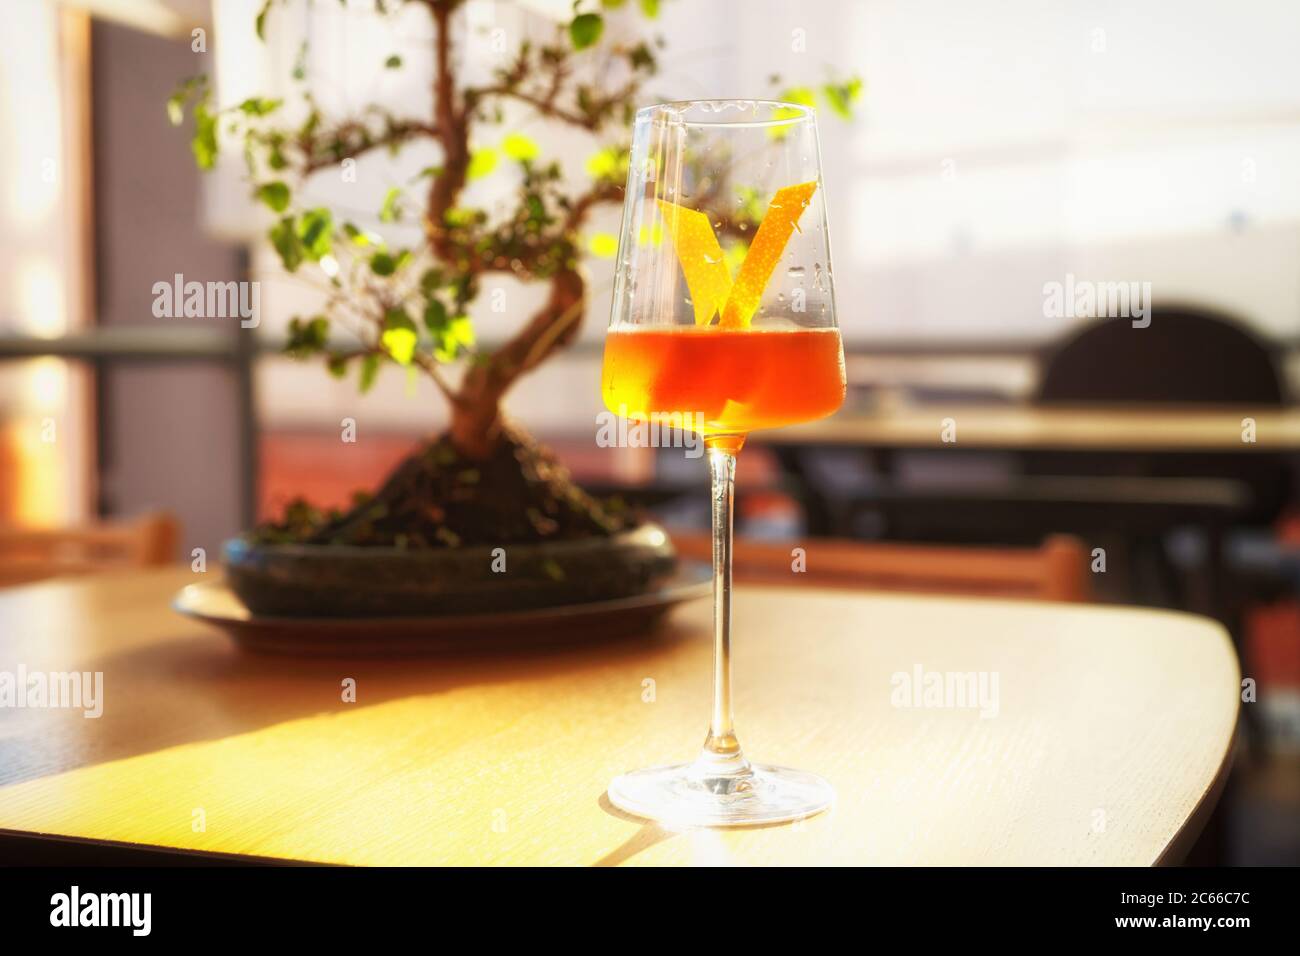 Japanischer Cocktail mit Zitronenschale in Weinglas, Bonsai-Baum, getönt Stockfoto